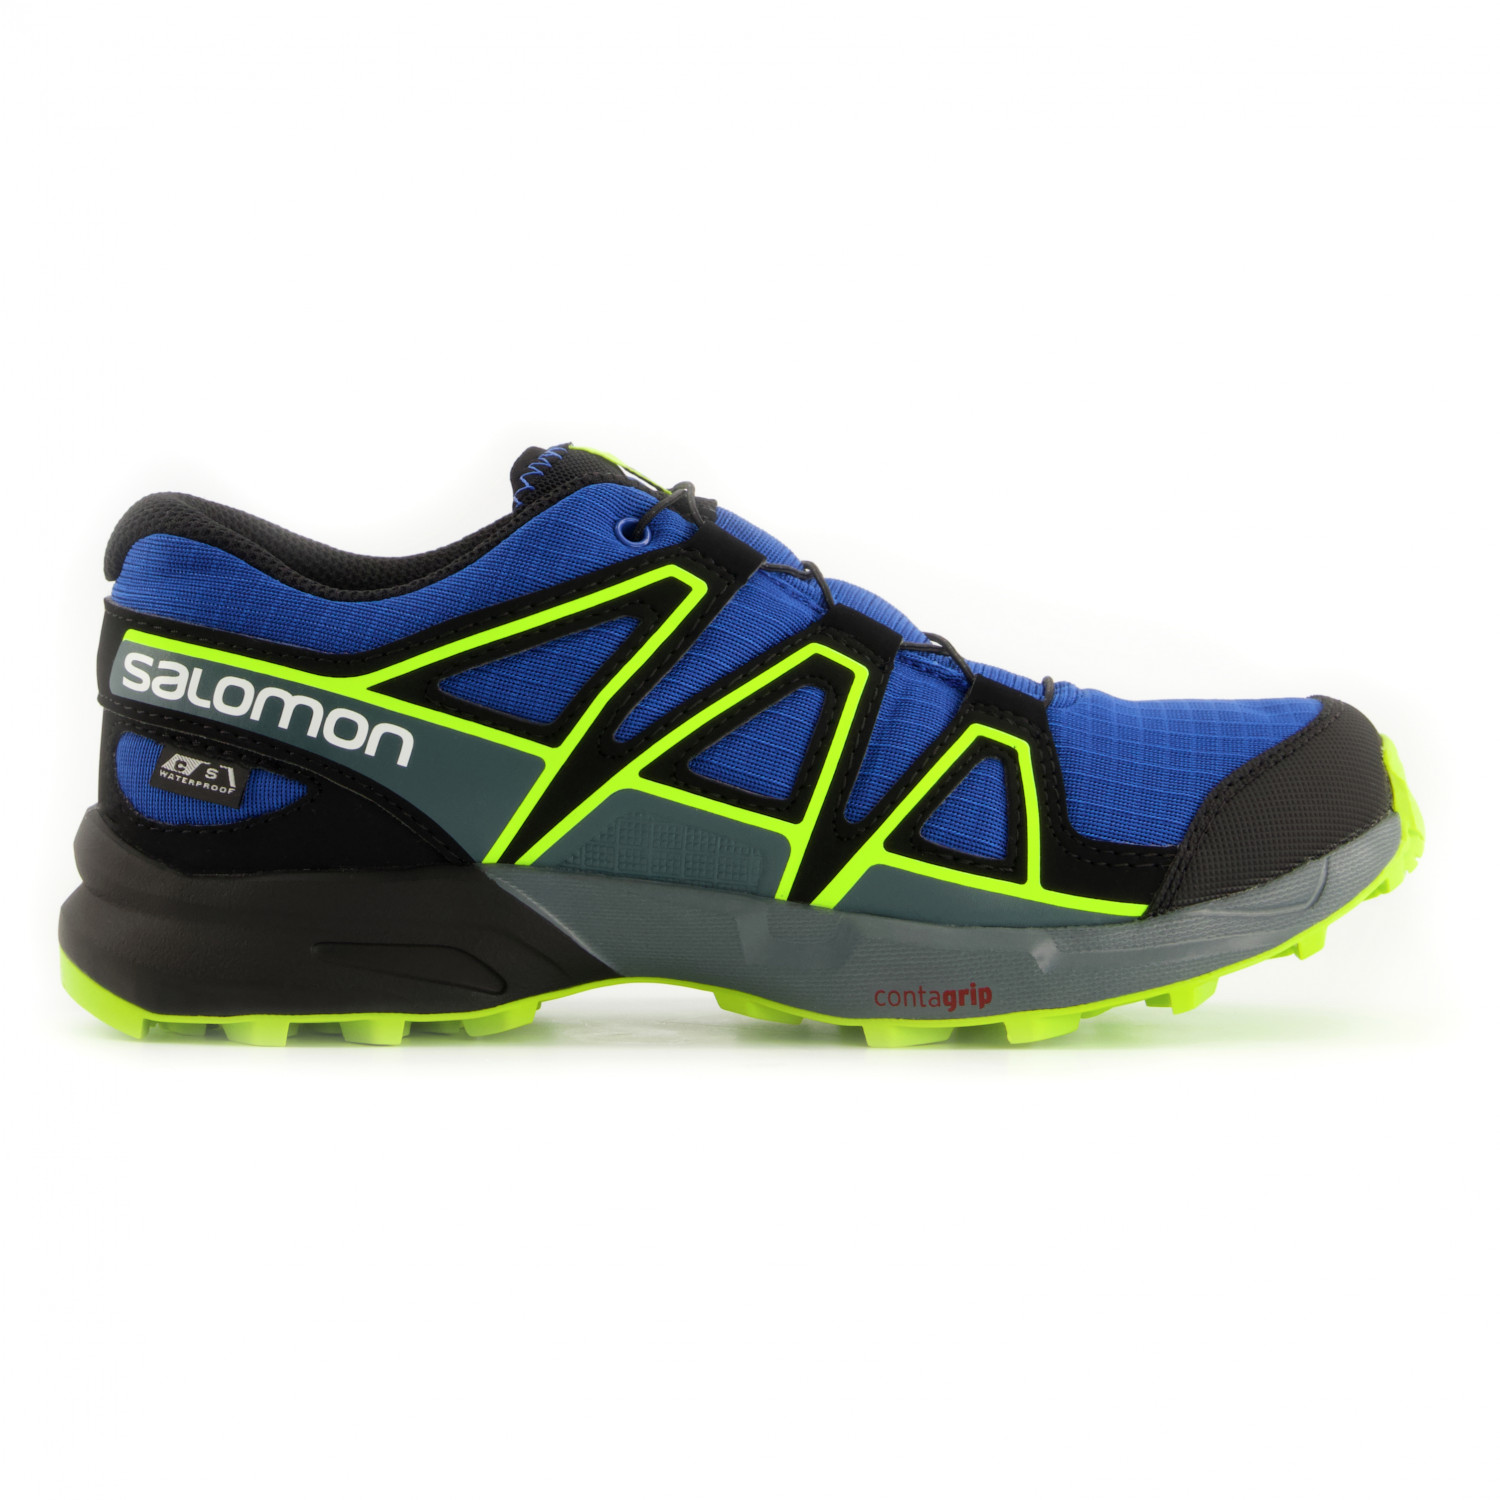 Мультиспортивная обувь Salomon Junior's Speedcross CSWP, цвет Nautical Blue/Black/Acid Lime